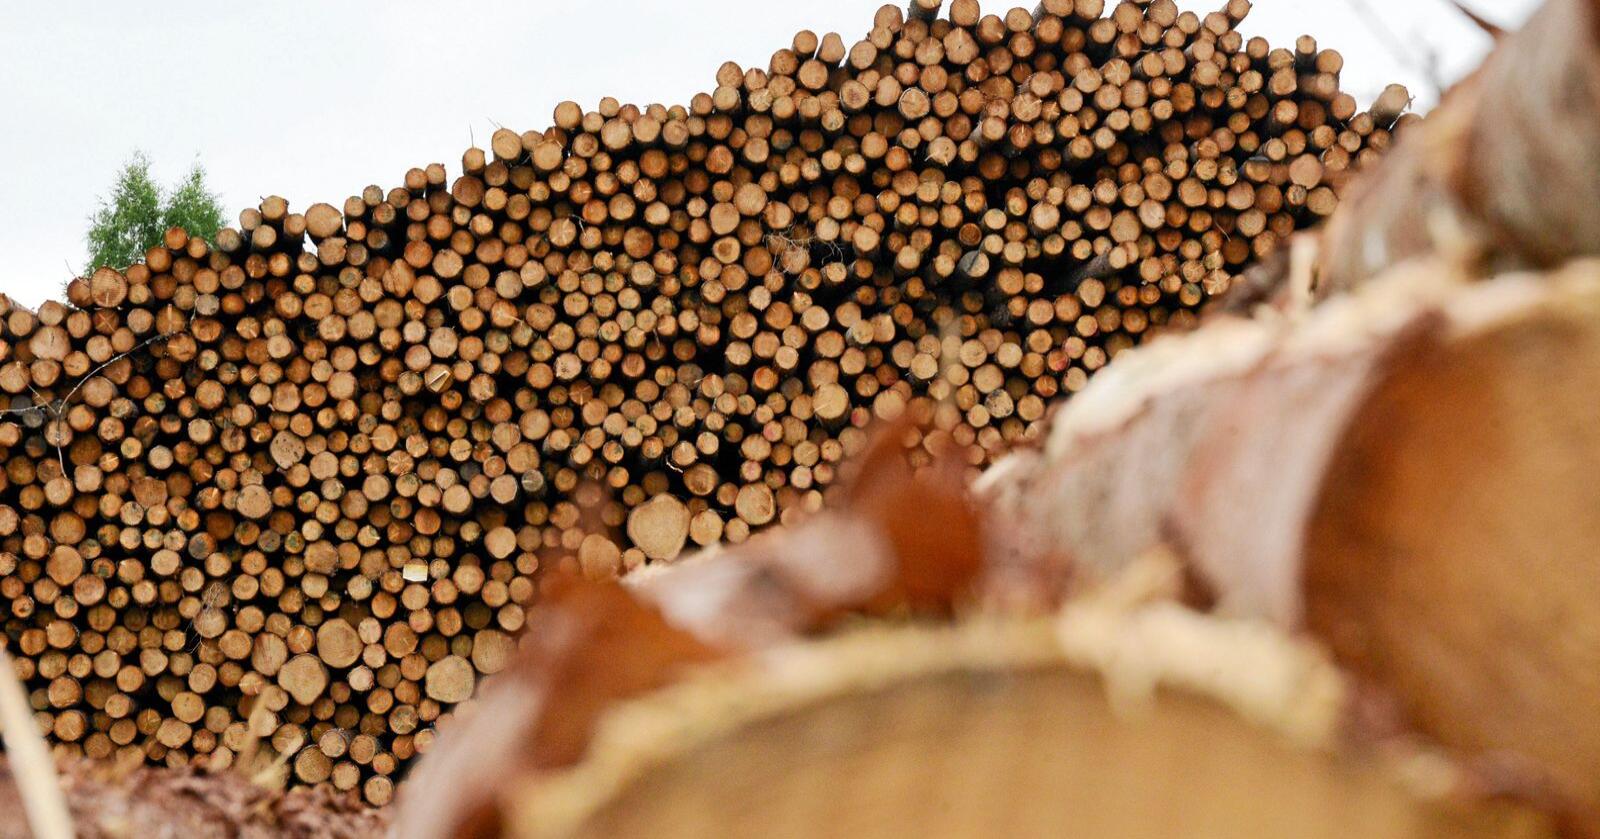 Seks av ti tømmerstokker eksporteres uforedlet. Dermed går Norge glipp av verdien som tilføres når råvaren videreforedles, skriver Une Bastholm. Foto: Siri Juell Rasmussen